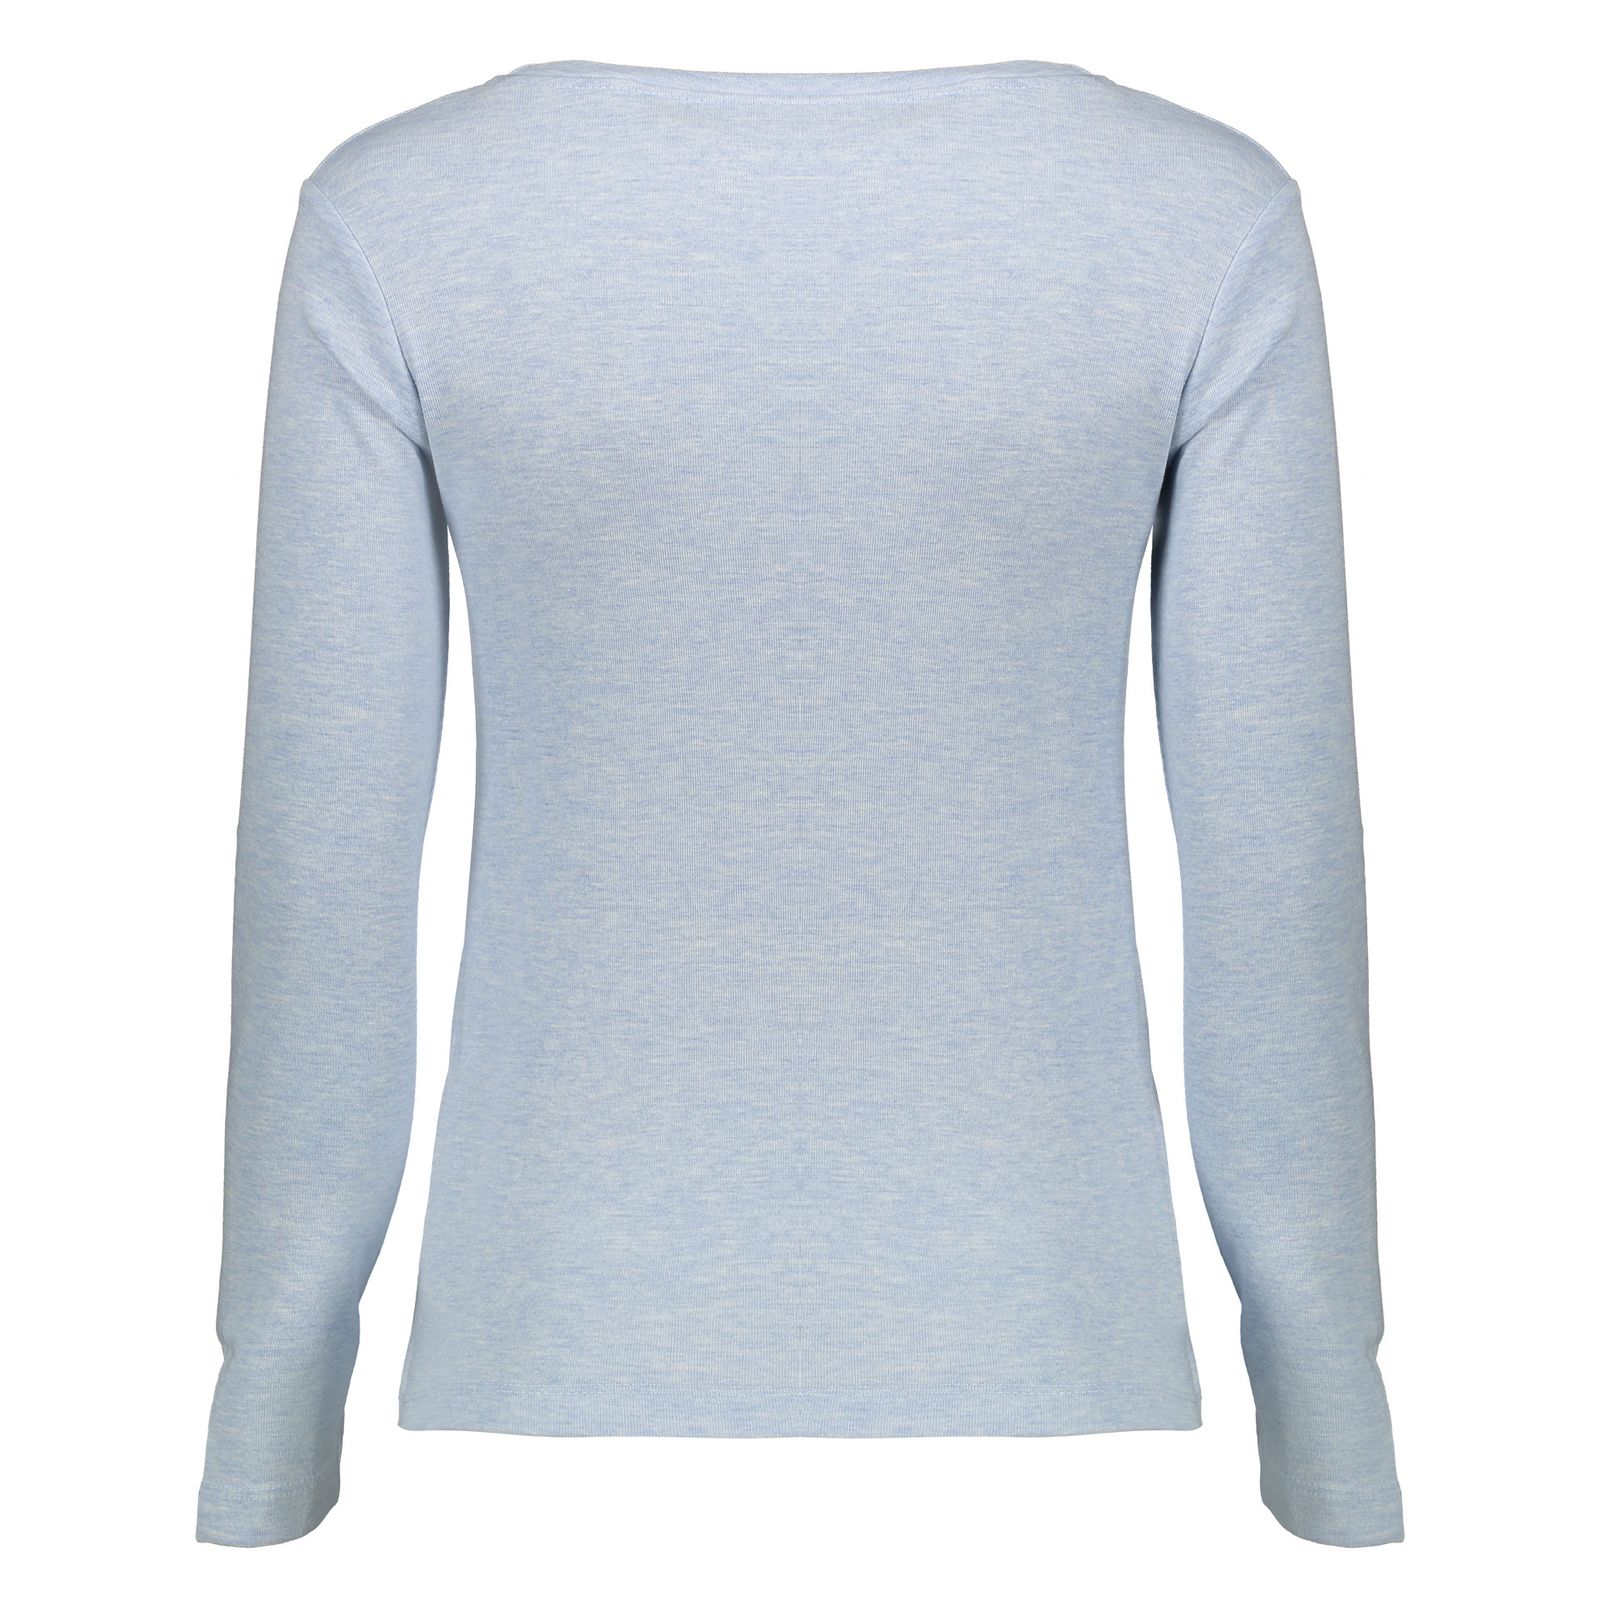 تی شرت زنانه گارودی مدل 1003107001-52 - آبی - 4